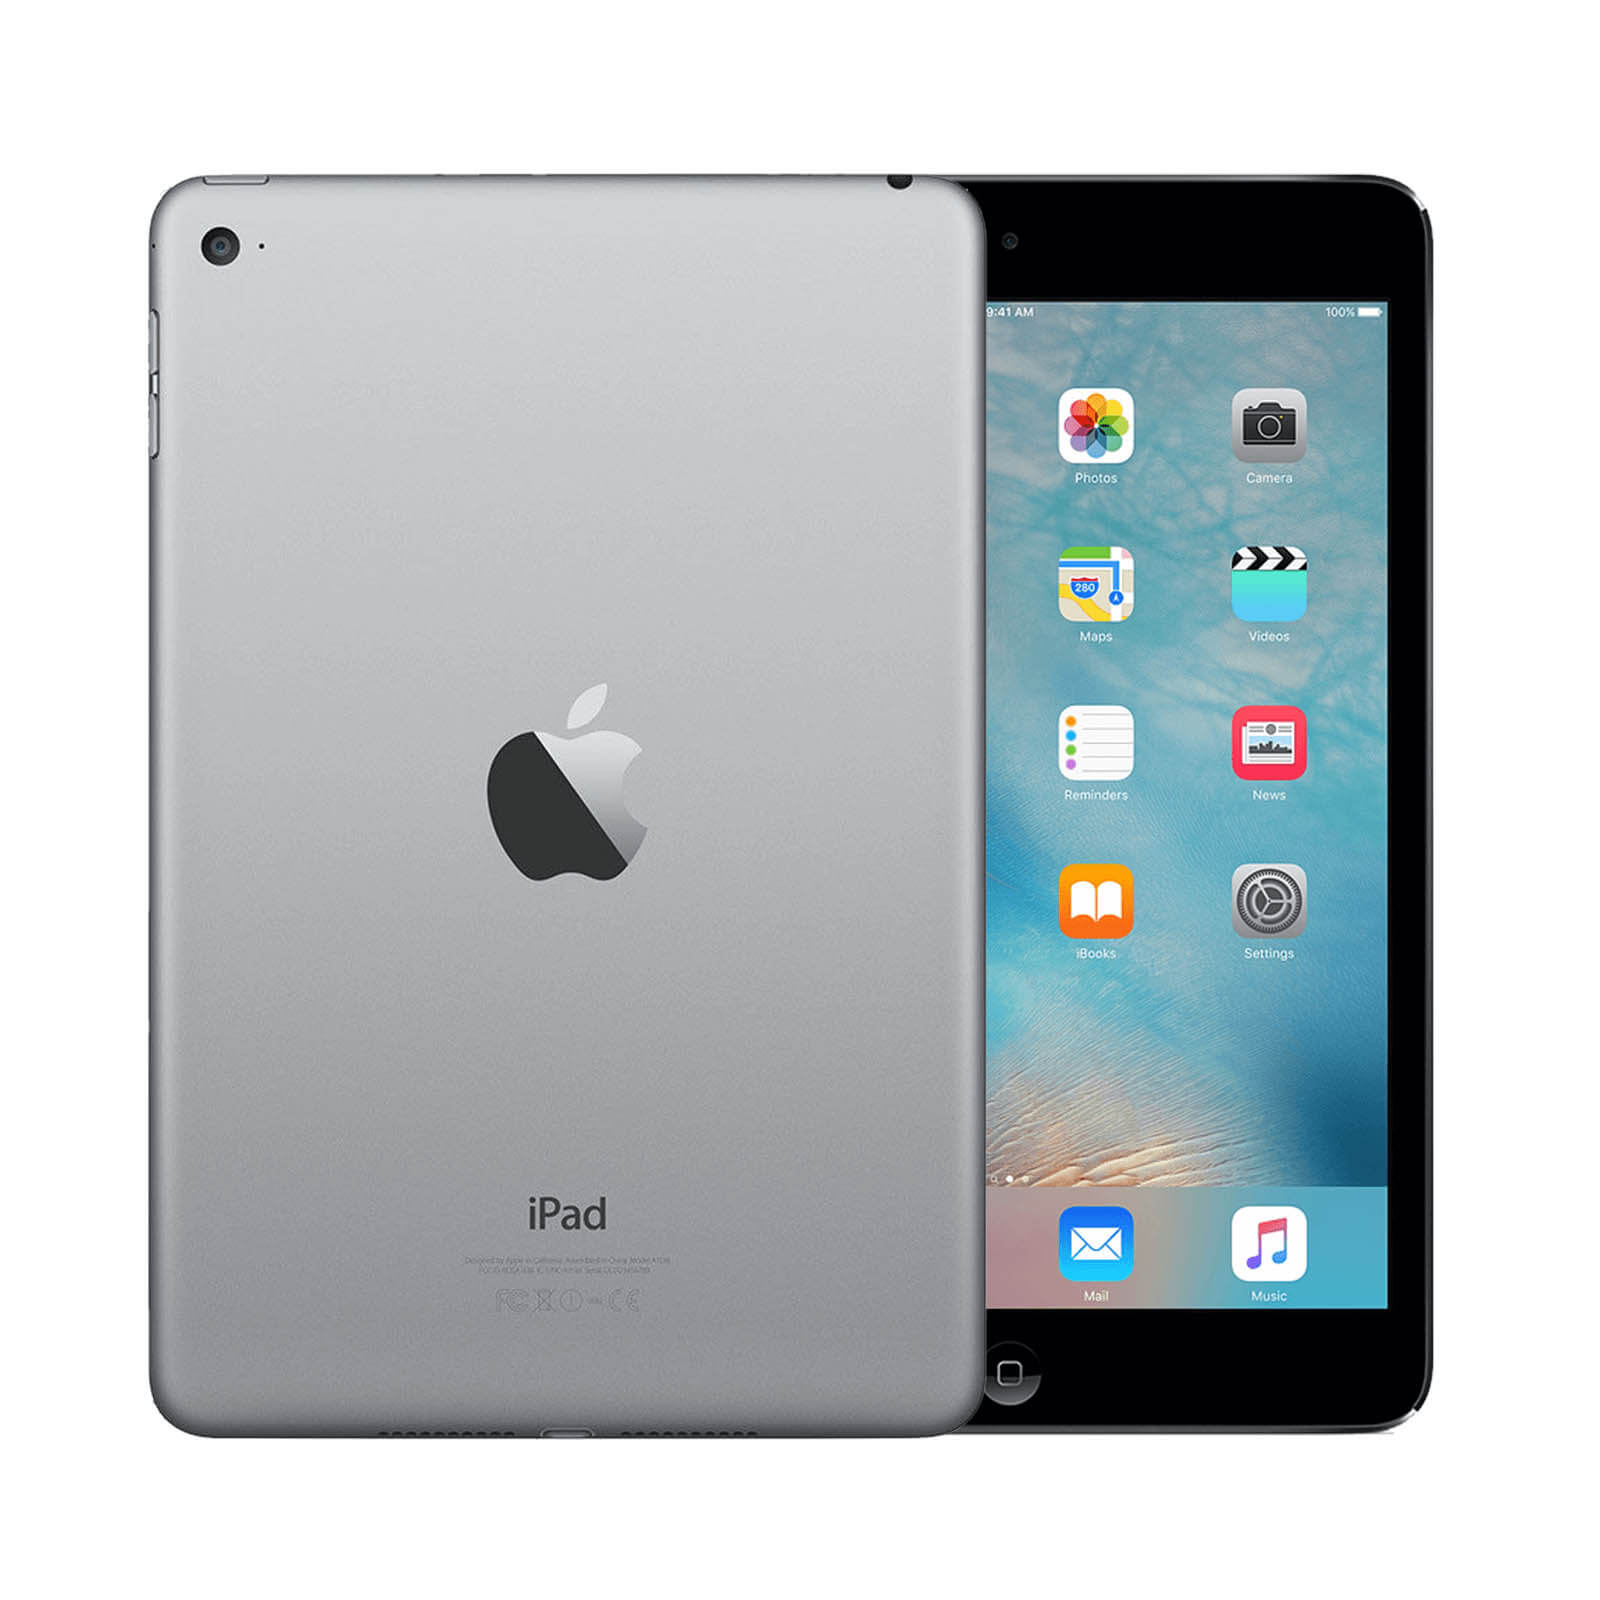 Apple iPad Mini 4 64GB Space Grey WiFi - Very Good 64GB Space Grey Very Good